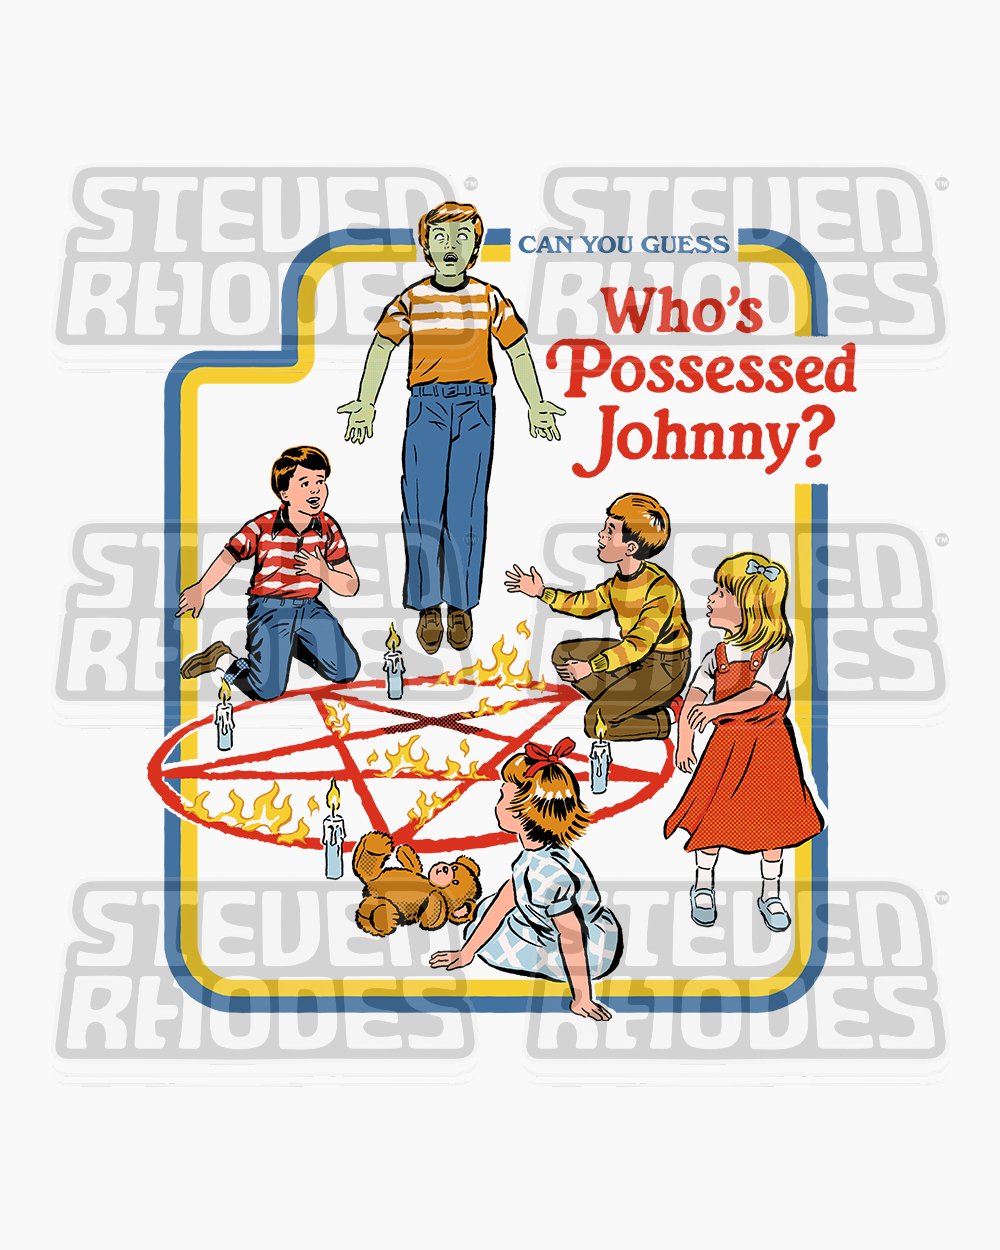 Who's Possessed Johnny? T-Shirt Australia Online #colour_white